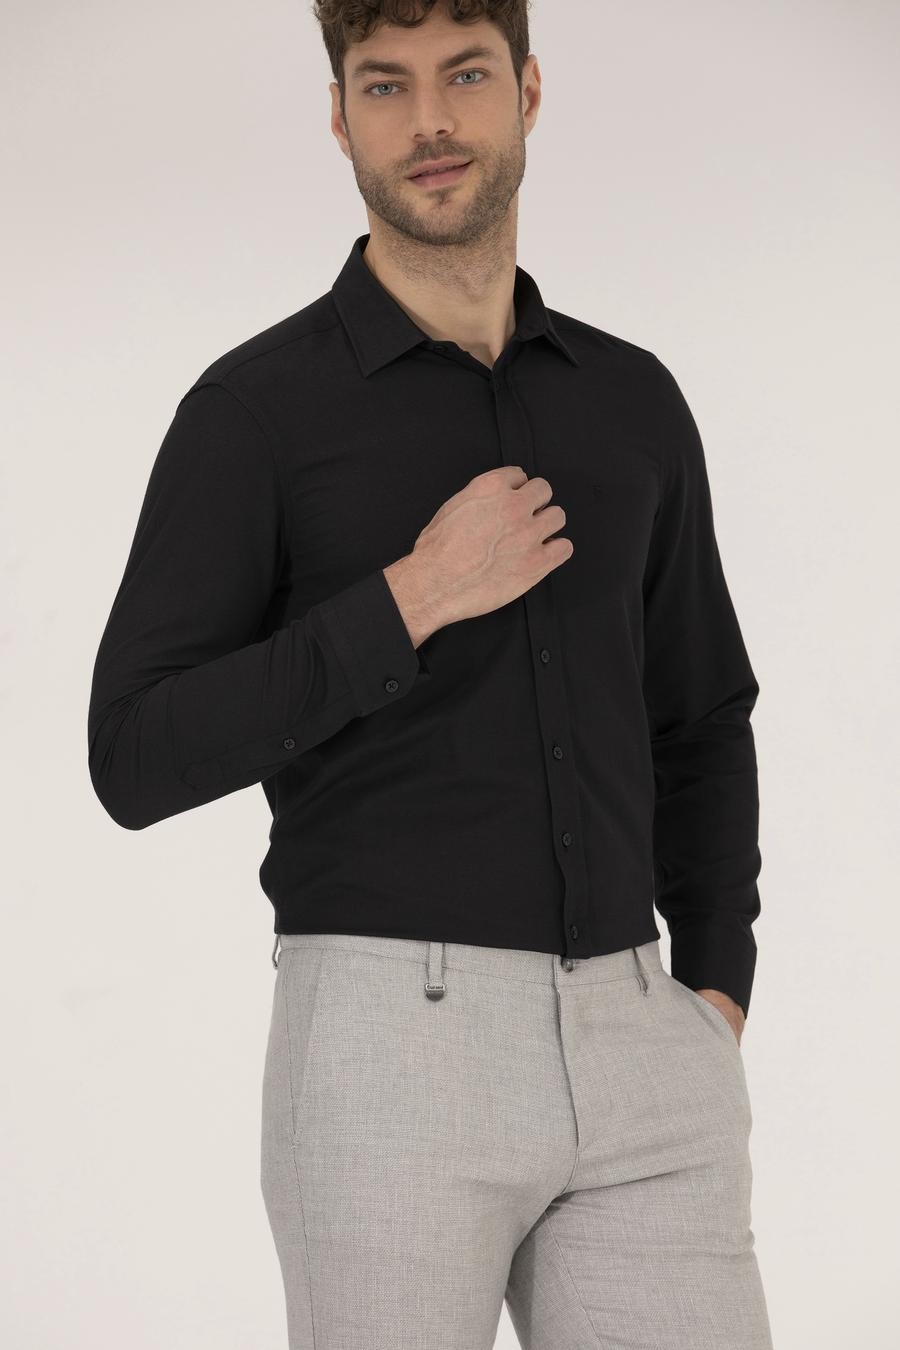 پیراهن یقه کلاسیک سیاه  اندامی آستین بلند مردانه  پیرکاردین